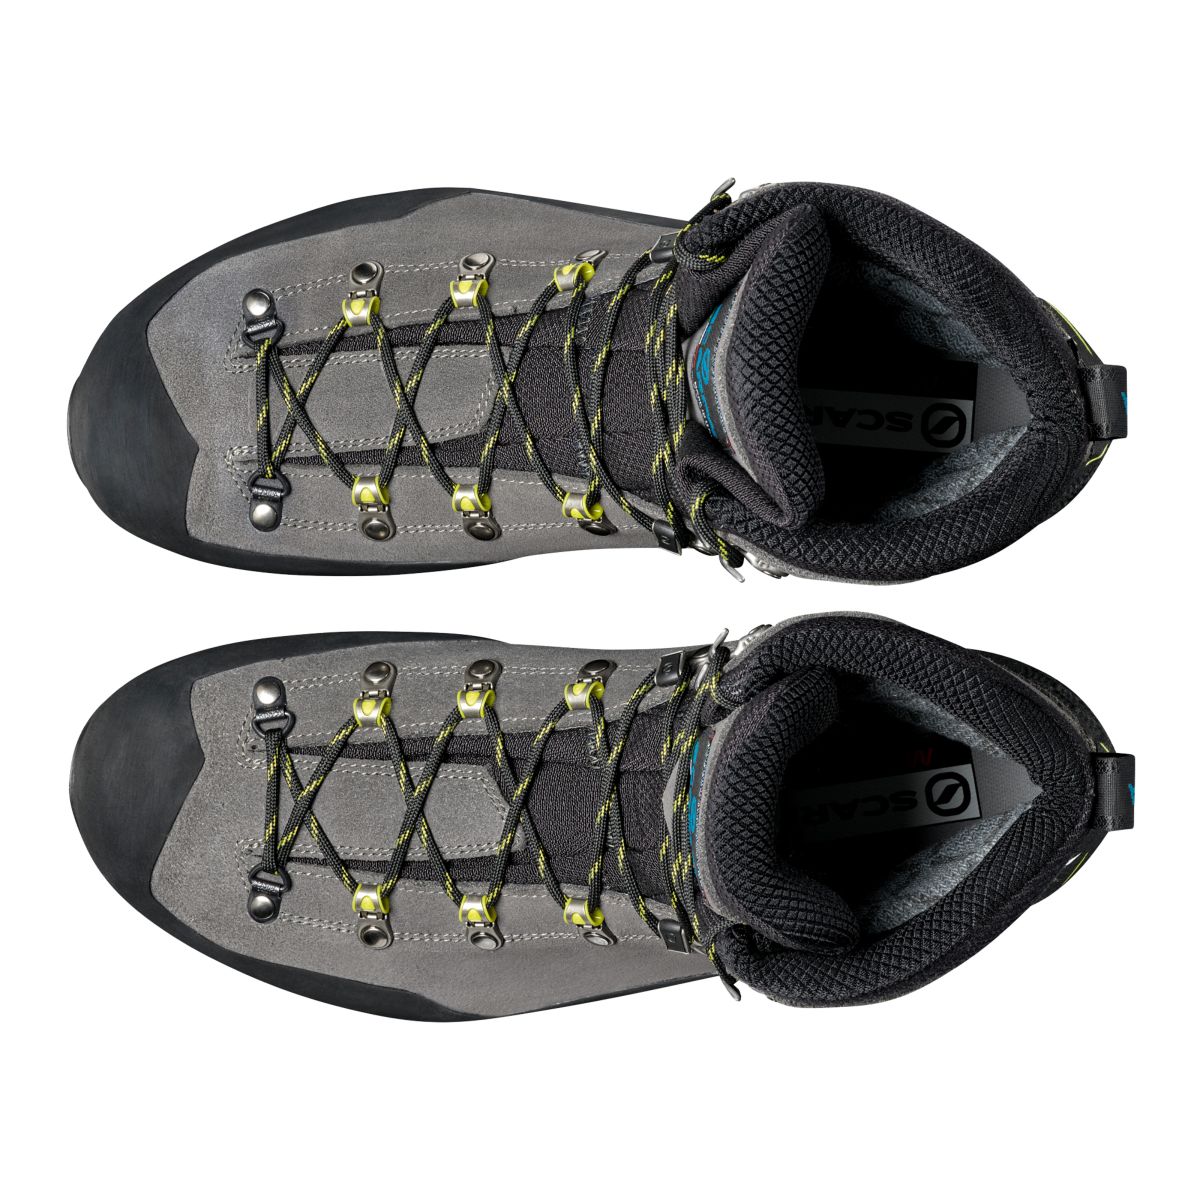 Scarpa Manta Tech GTX - Men's | Mountaineering Boots